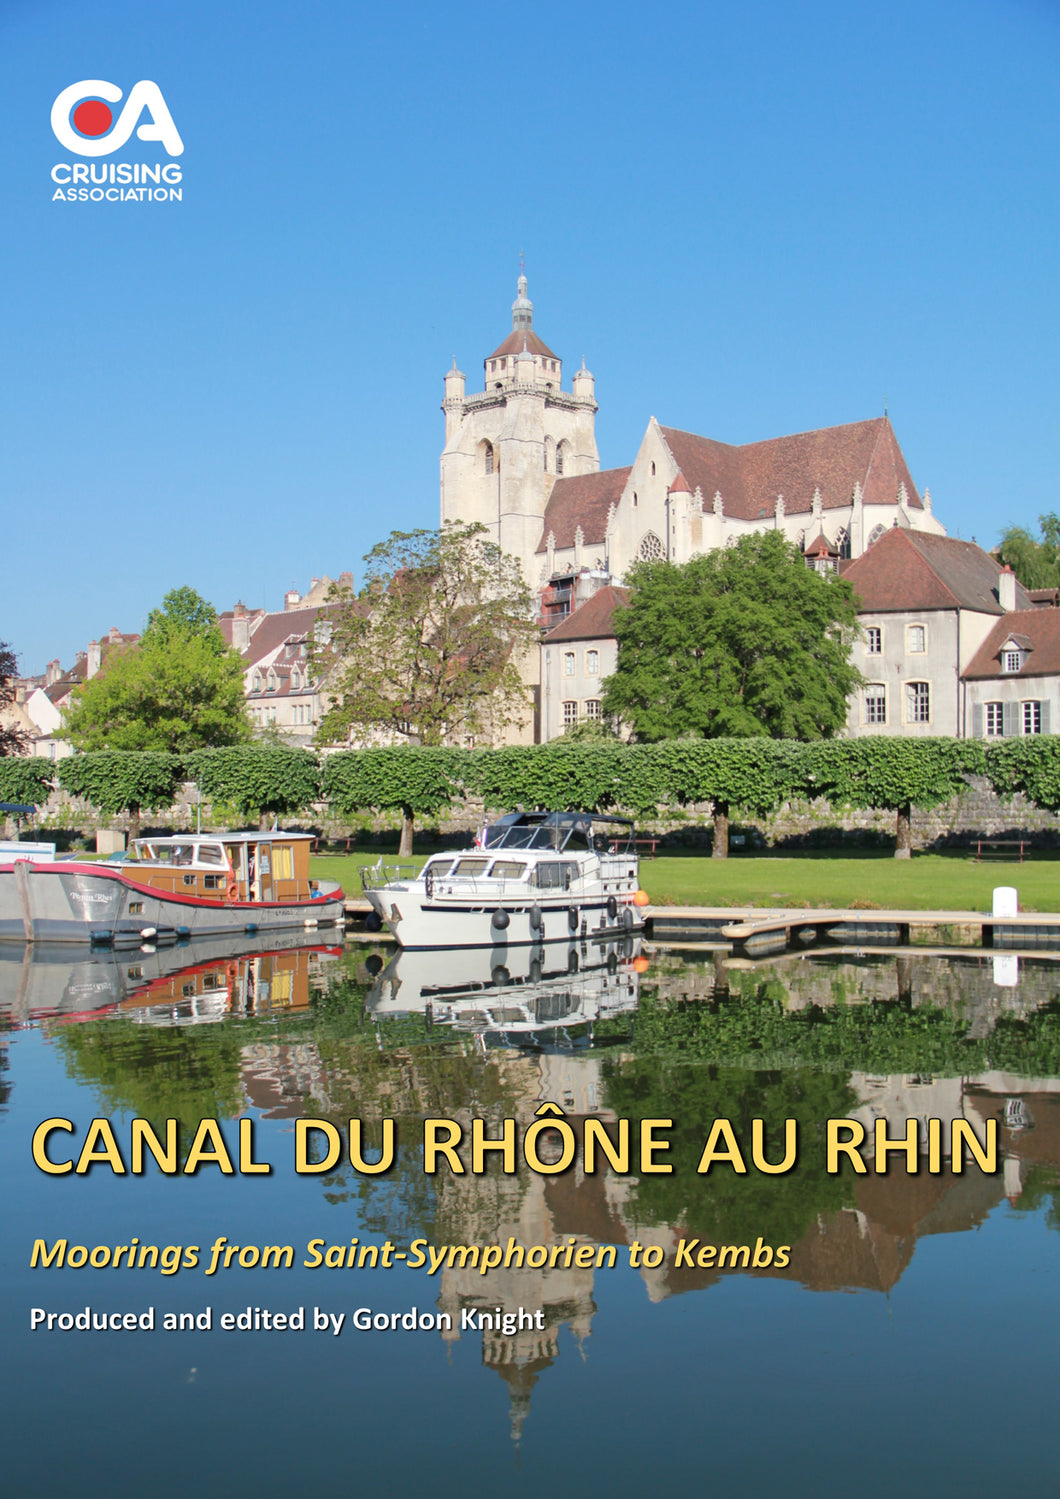 Guide to the Canal du Rhône au Rhin